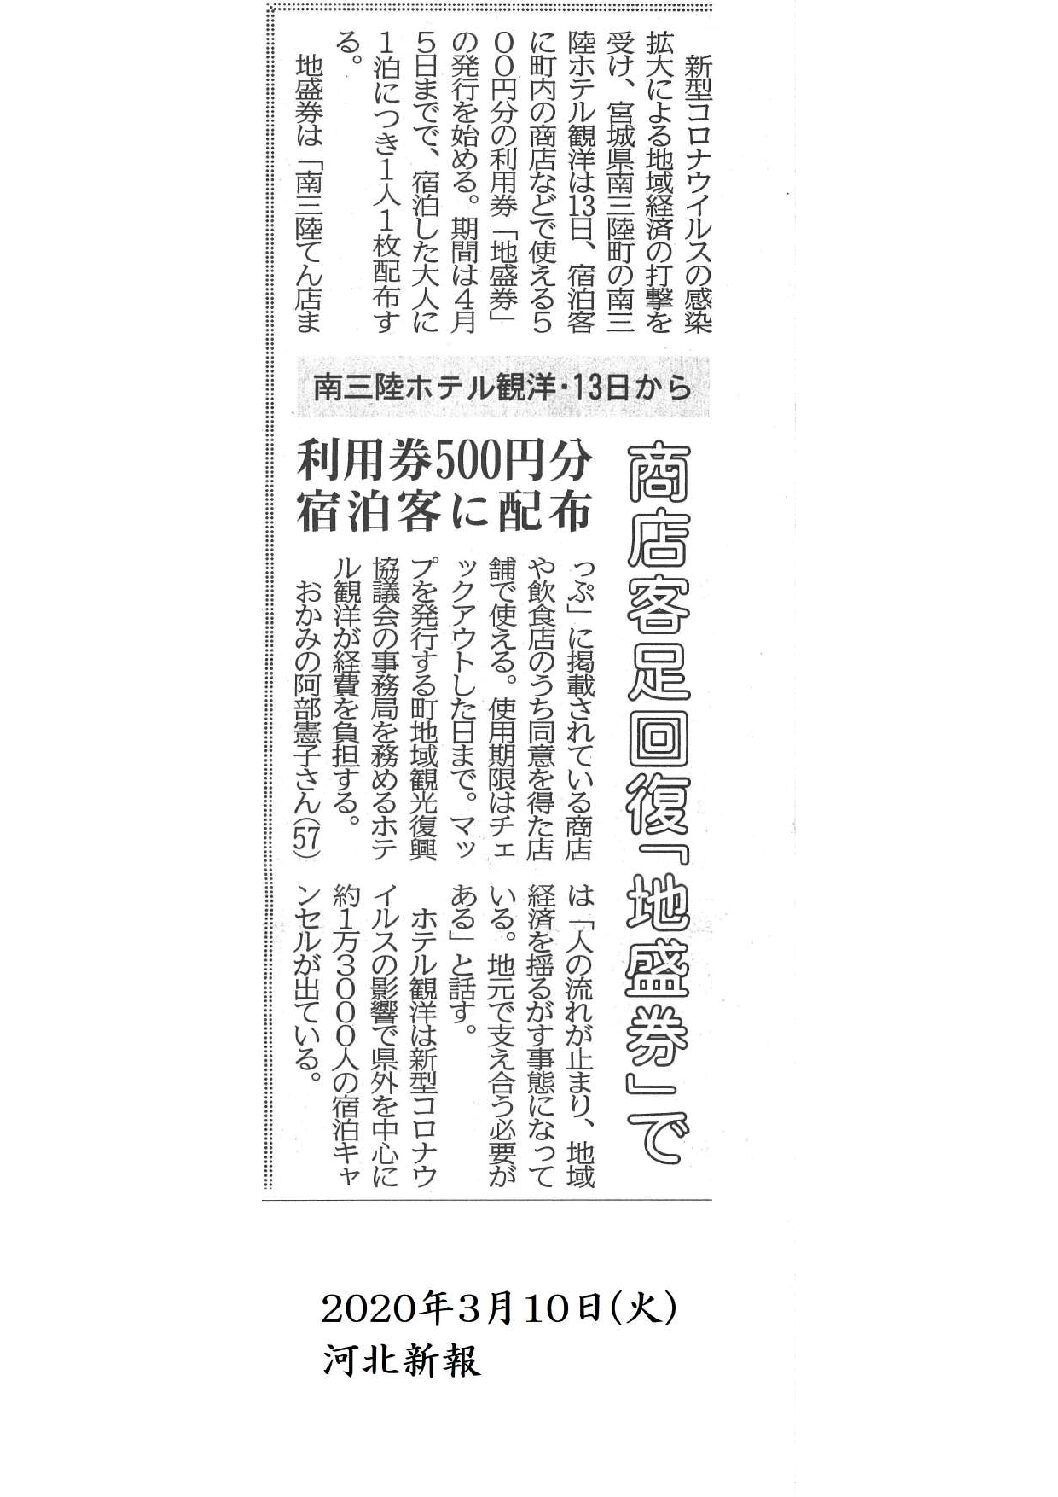 2020/3/10【河北新報】商店客足回復「地盛券」で